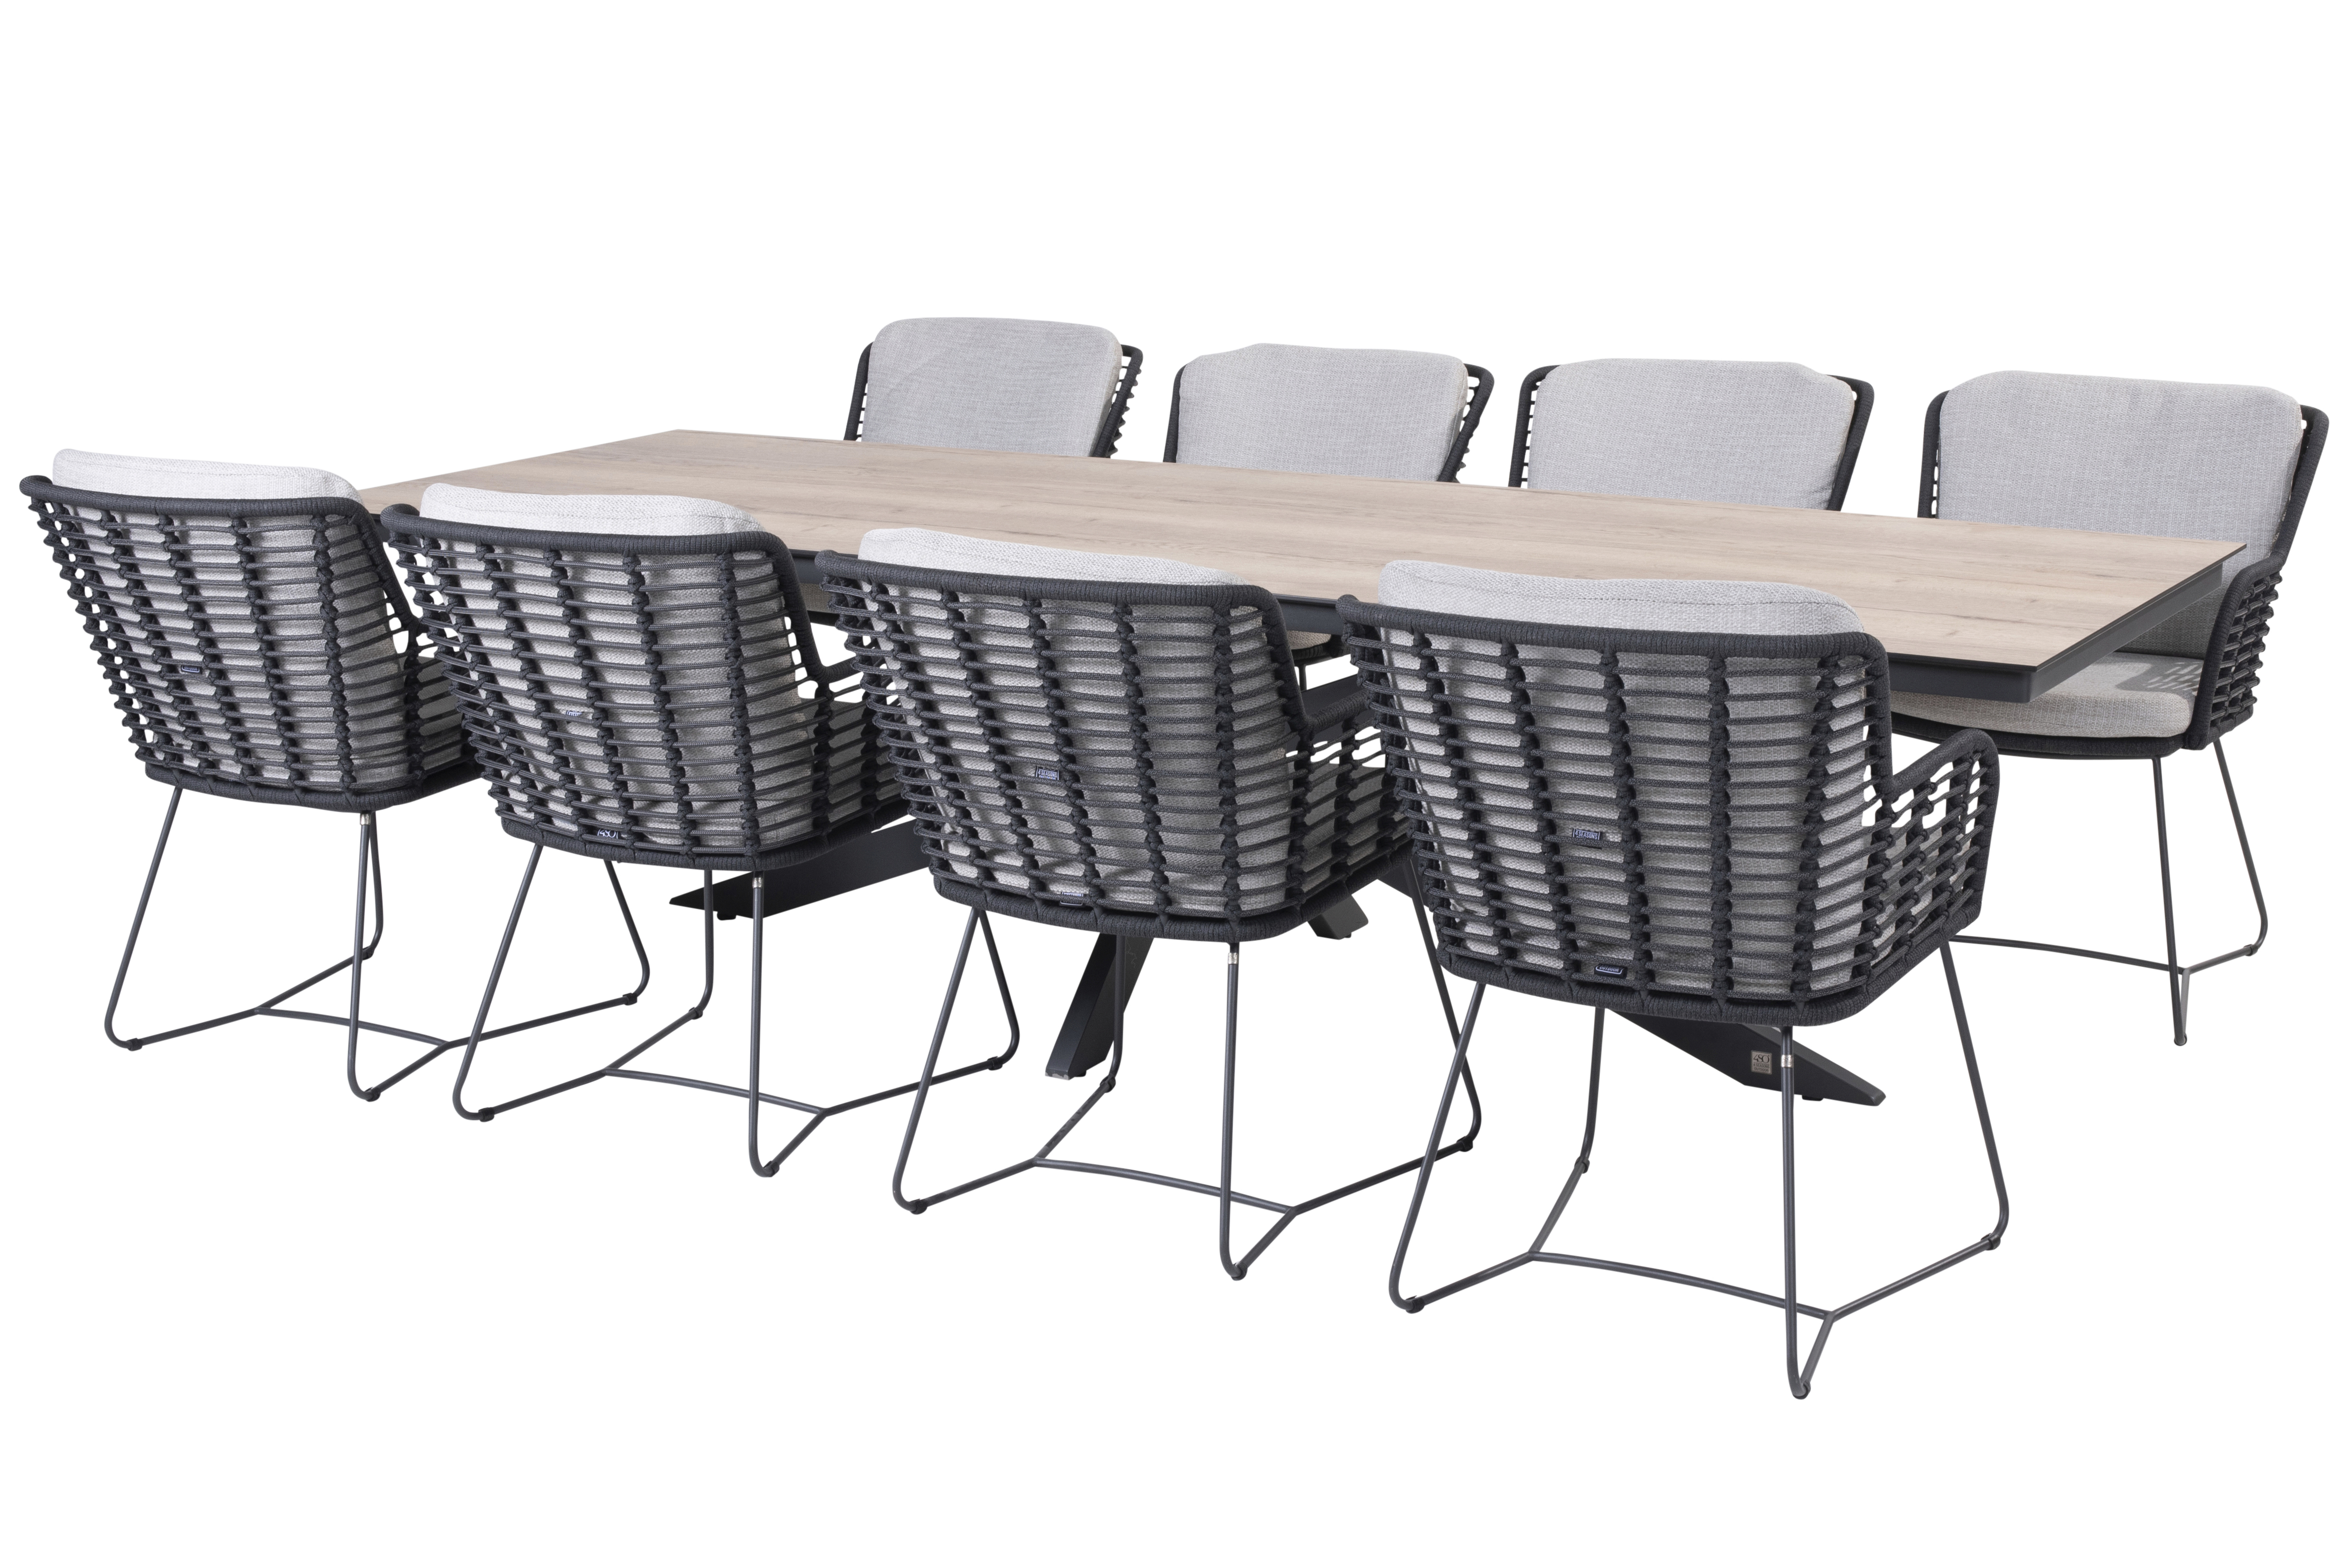 Minerva tafel met HPL top TEAK pattern 220 x 95 cm incl 6 Fabrice eetstoelen 4 Seasons Outdoor